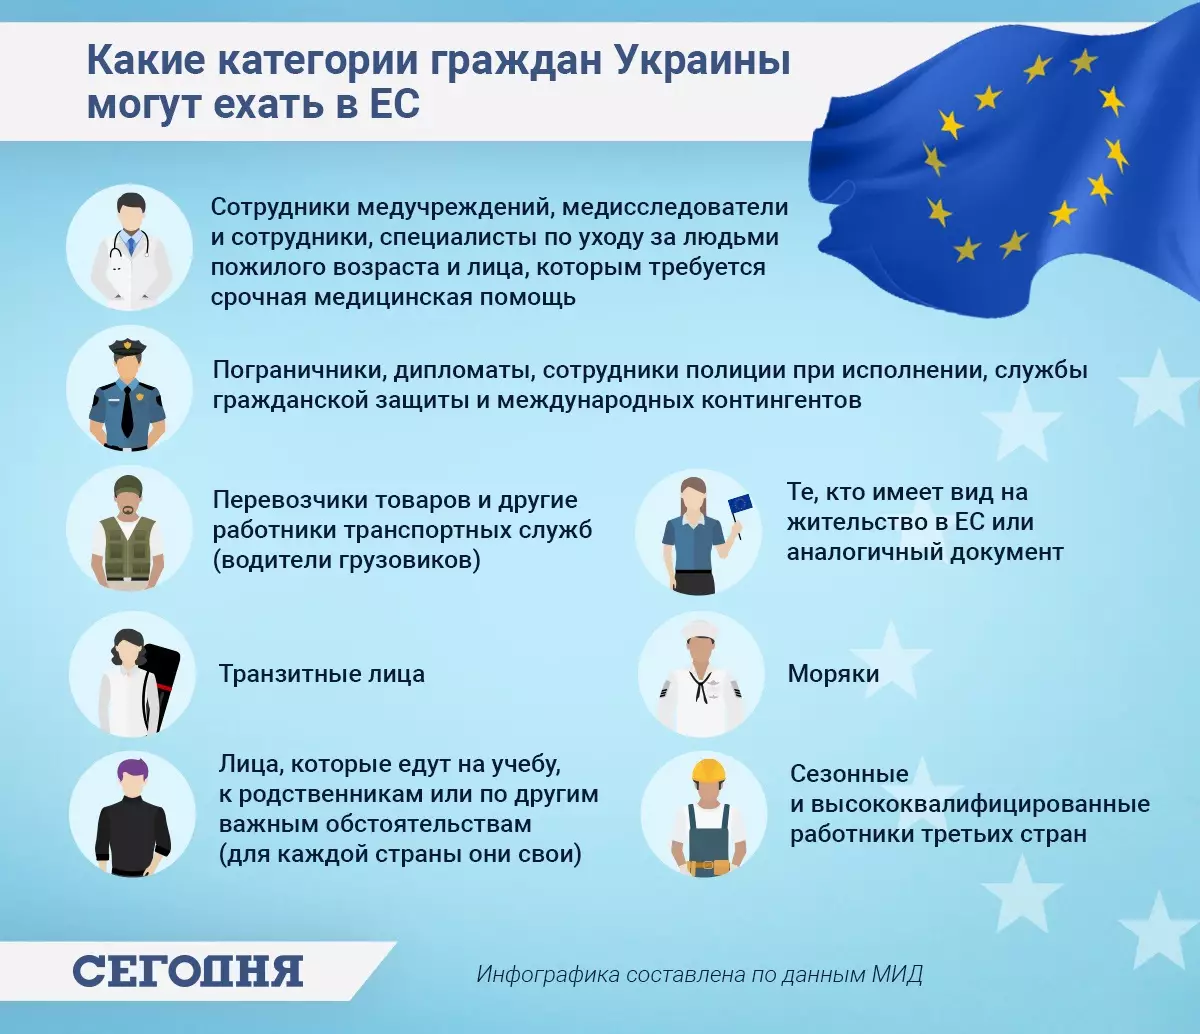 Инфографика: "Какие категории граждан Украины могут ехать в ЕС"